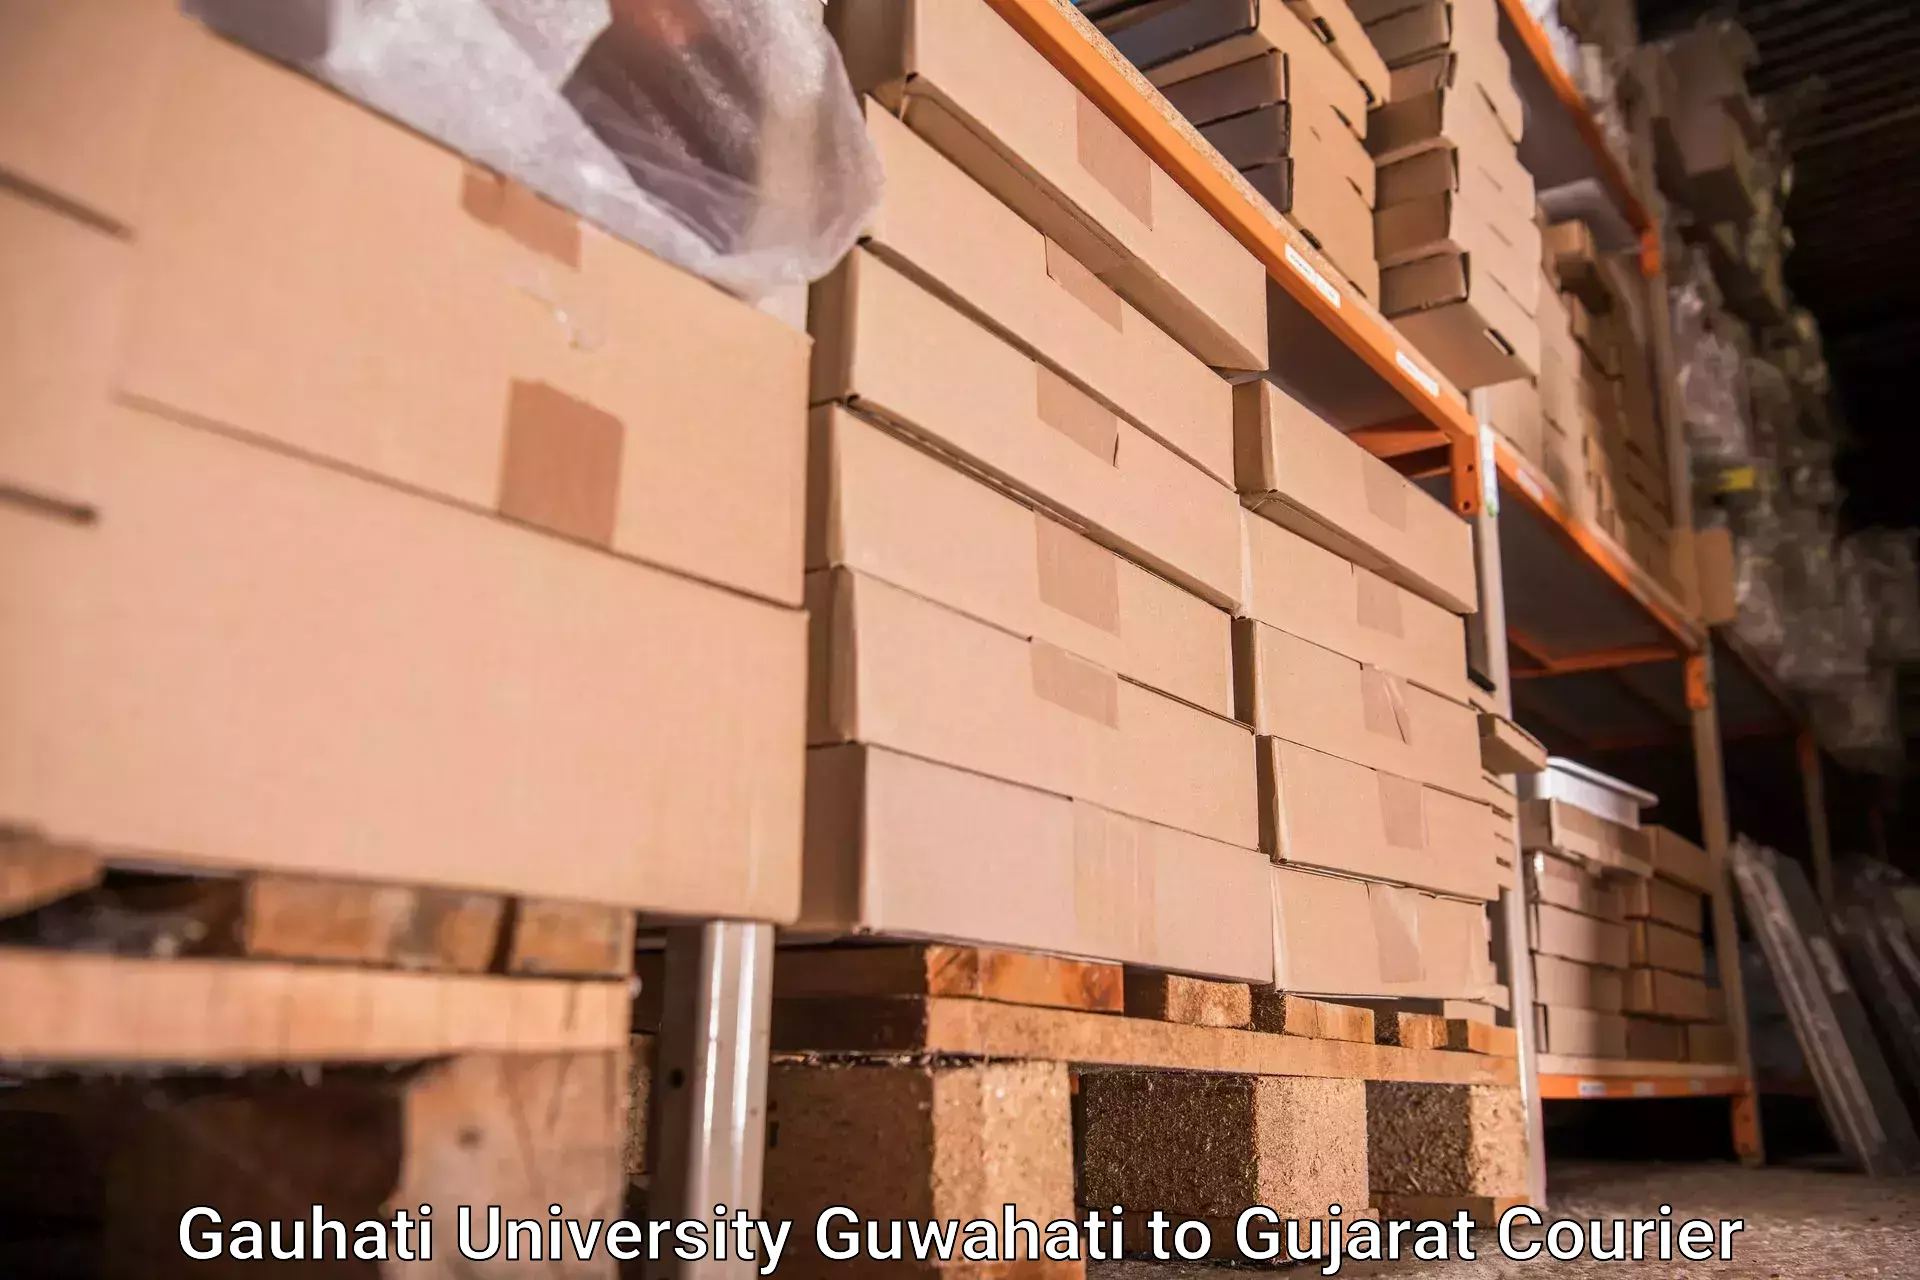 Door-to-door baggage service Gauhati University Guwahati to IIT Gandhi Nagar